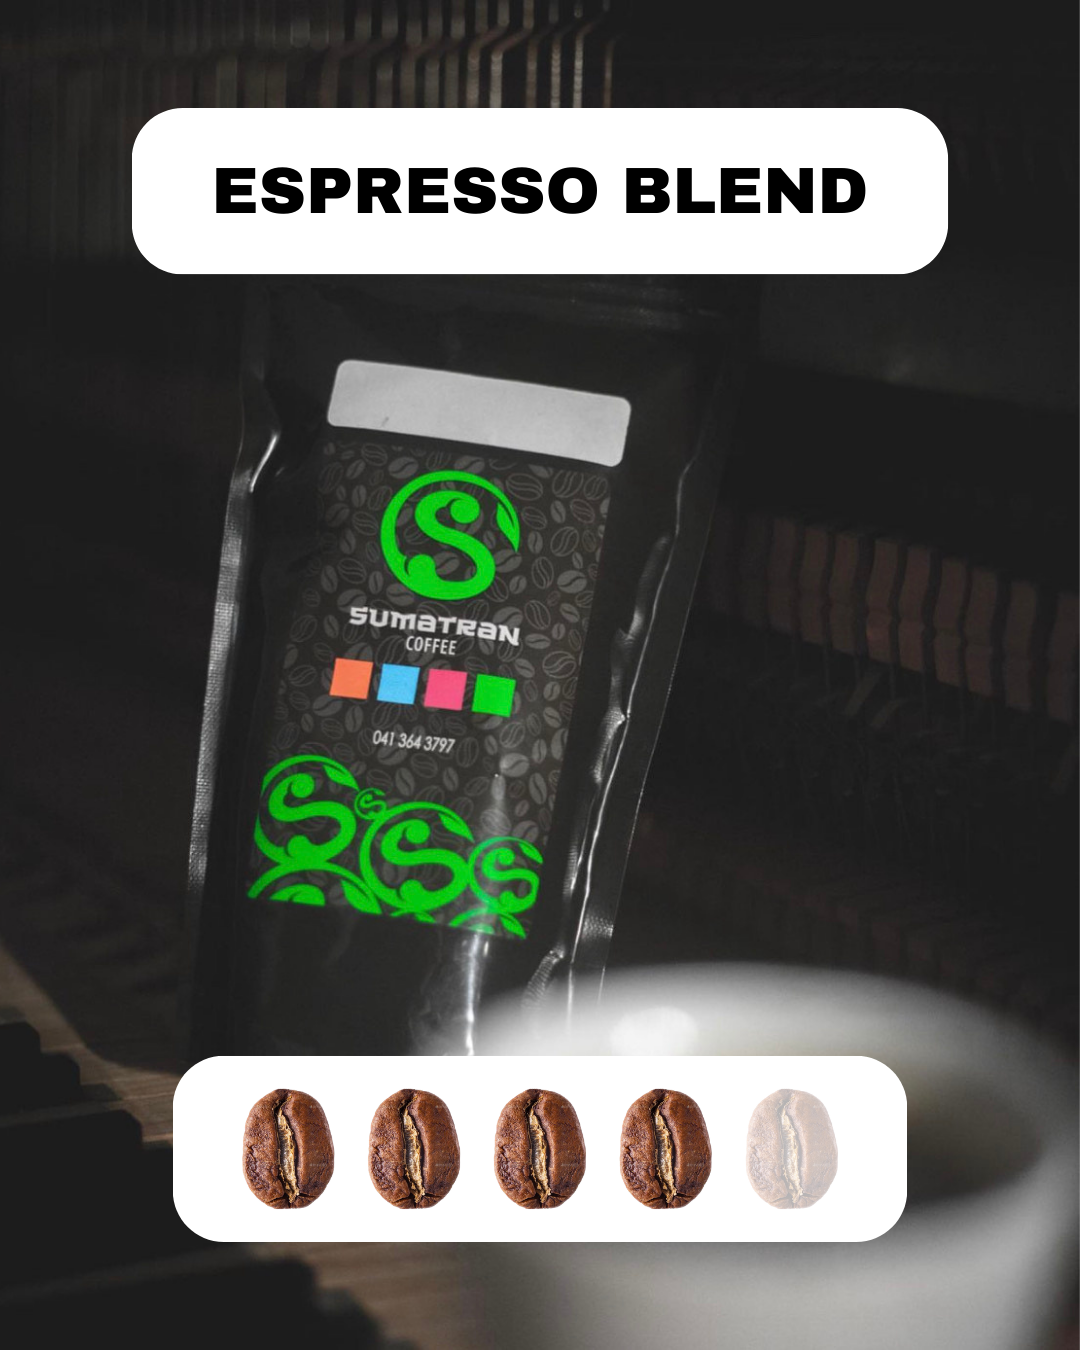 Bag of Espresso Blend Coffee